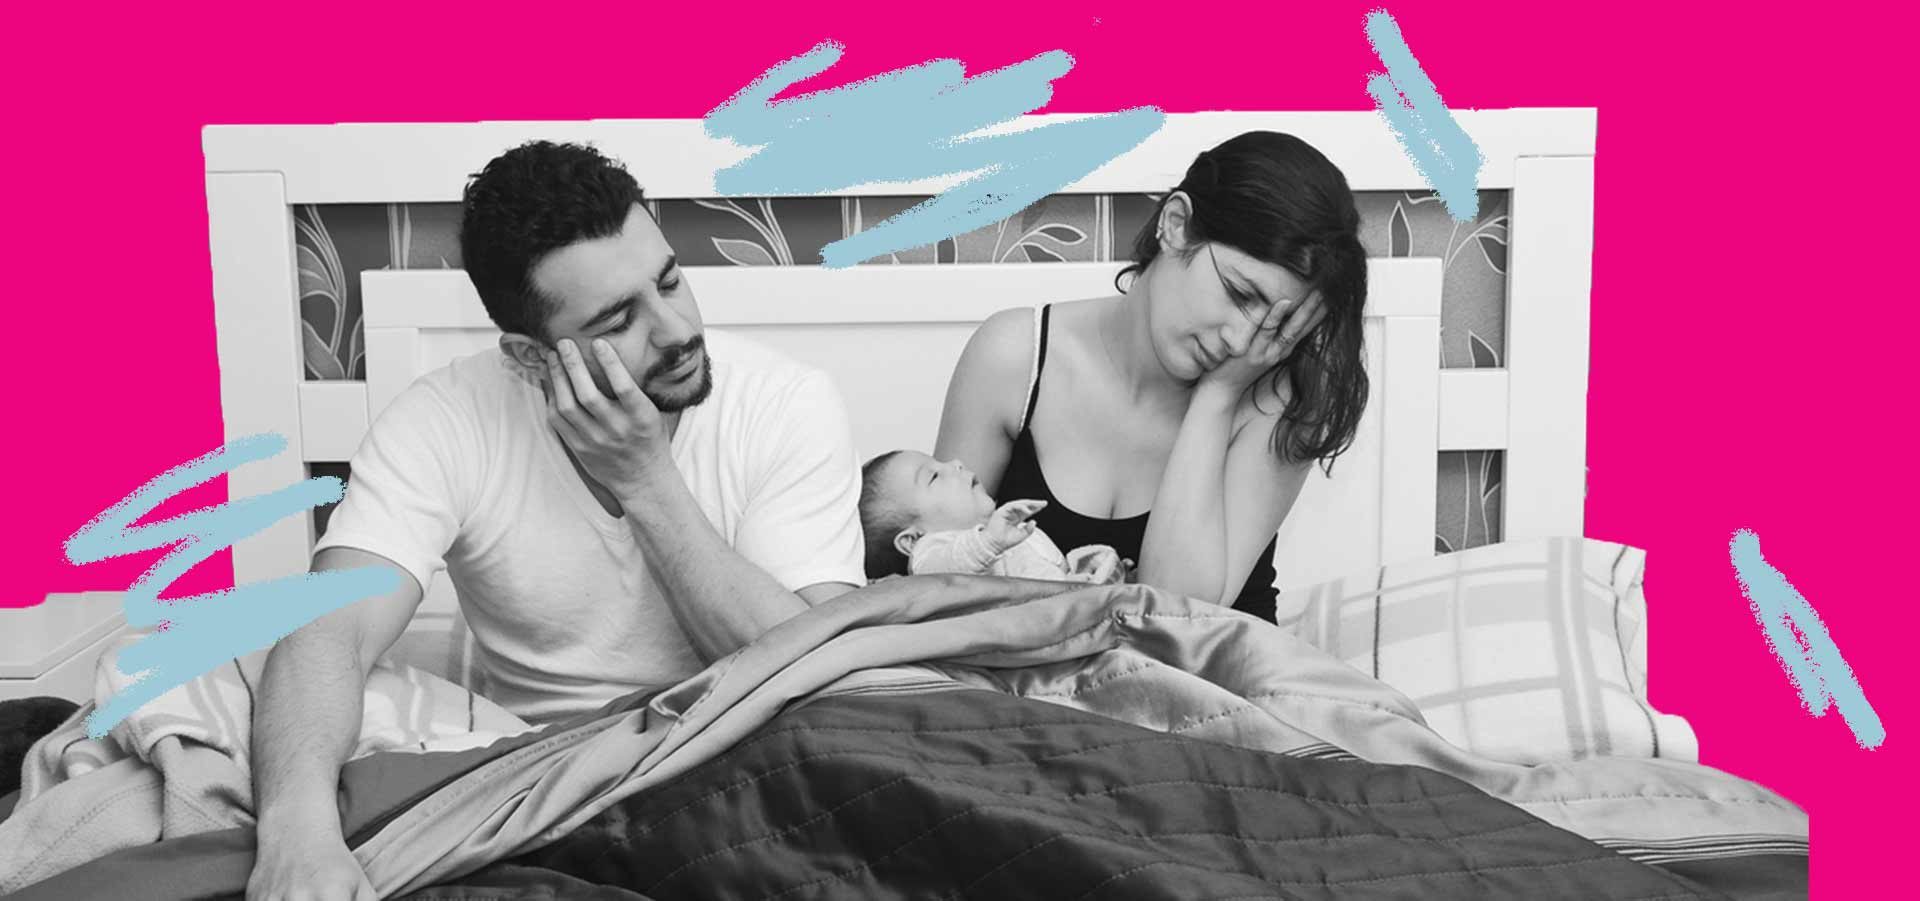 Mães e sexualidade: foto de um casal na cama; o homem está ao lado e a mulher carrega um bebê com semblante cansado